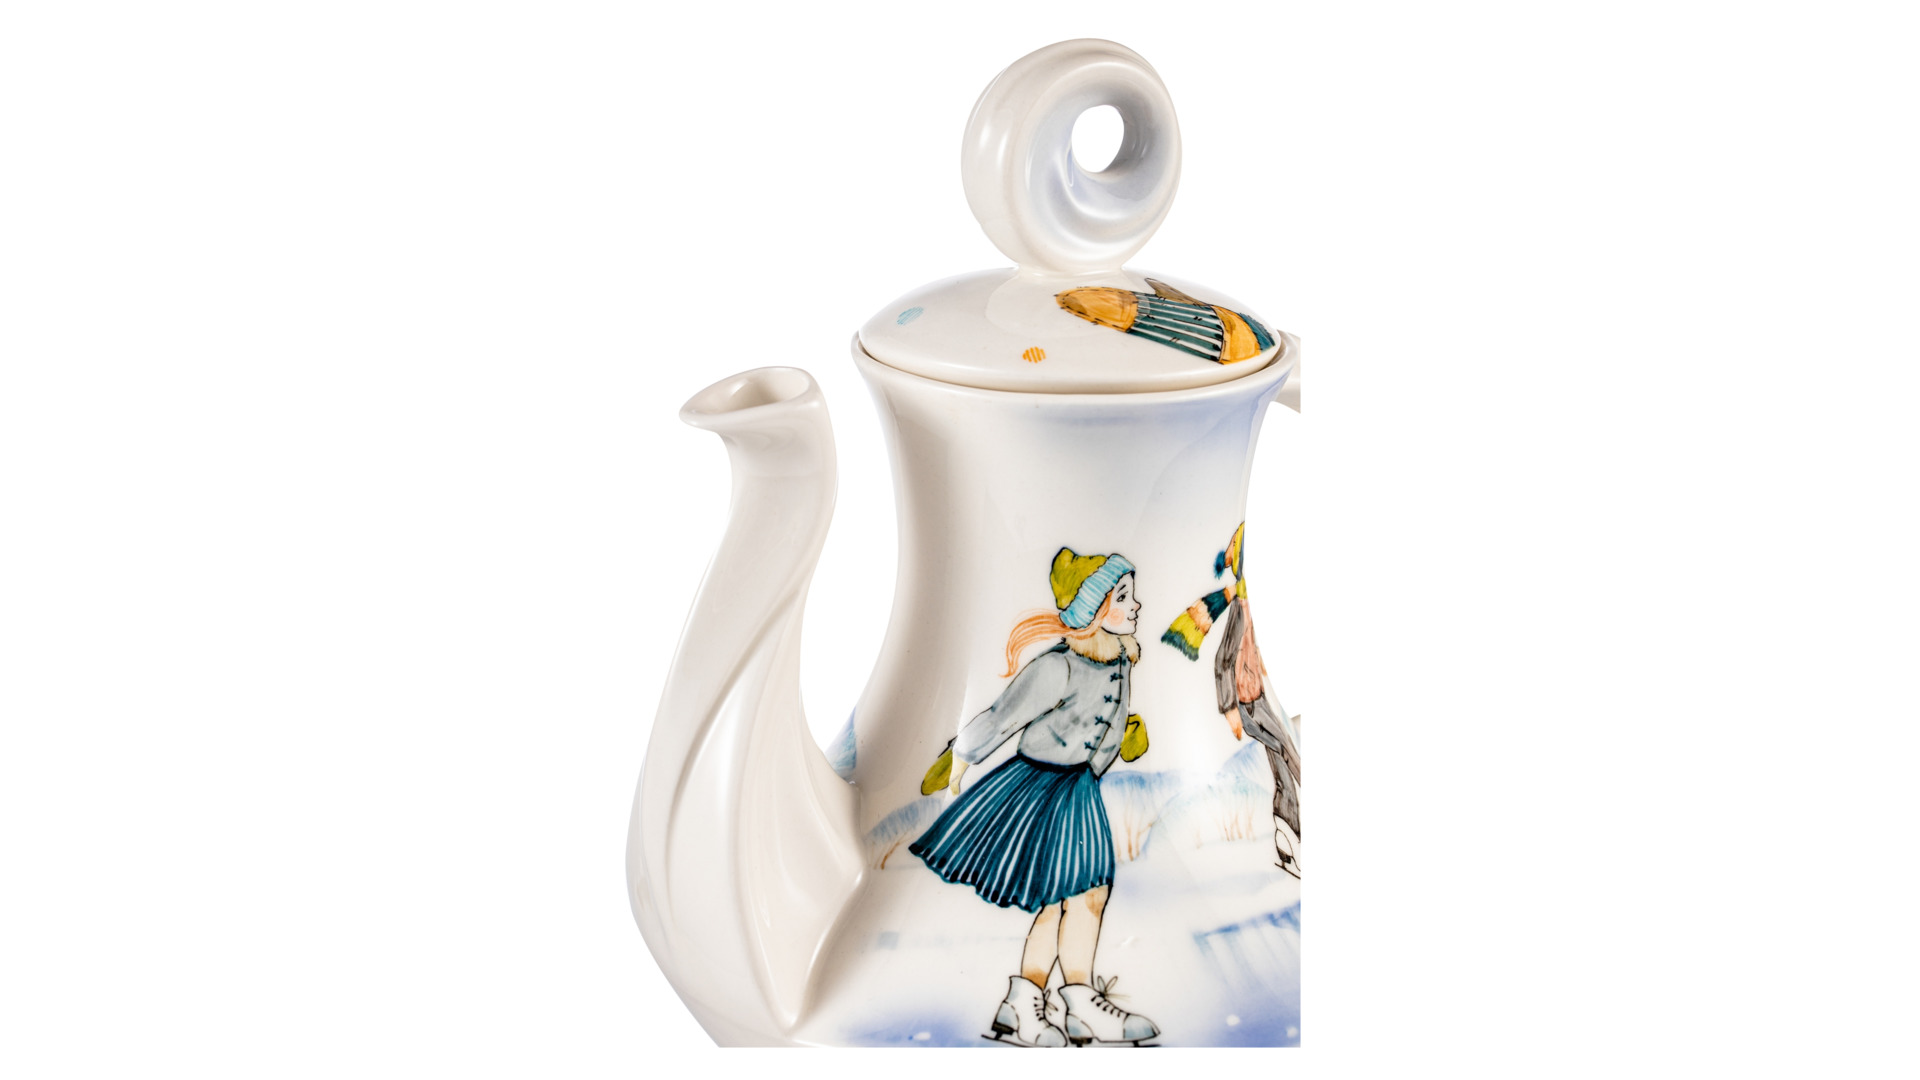 Сервиз чайный Терра Керамос Зимние забавы на 2 персоны 5 предметов, подглазурная роспись, фарфор тве